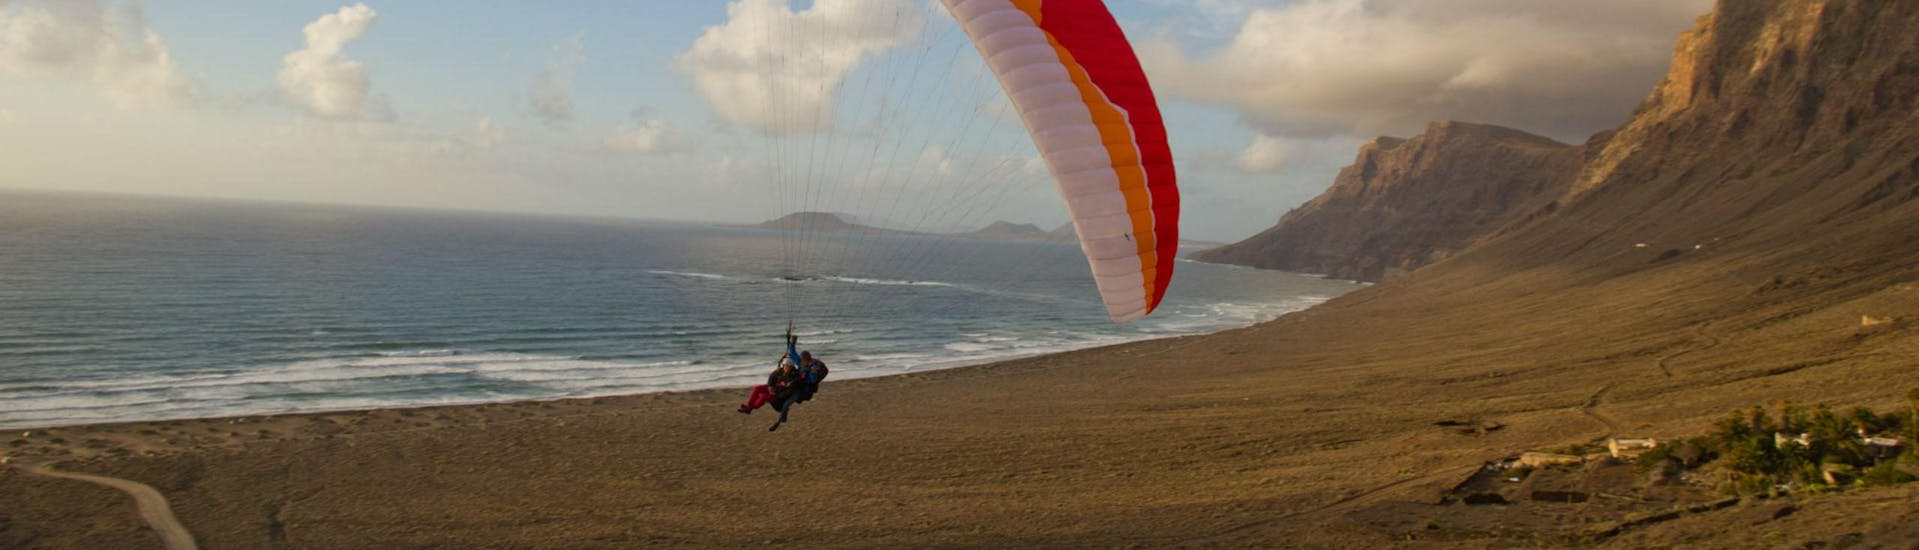 Tandem Paragliding in Lanzarote - Adrenaline.